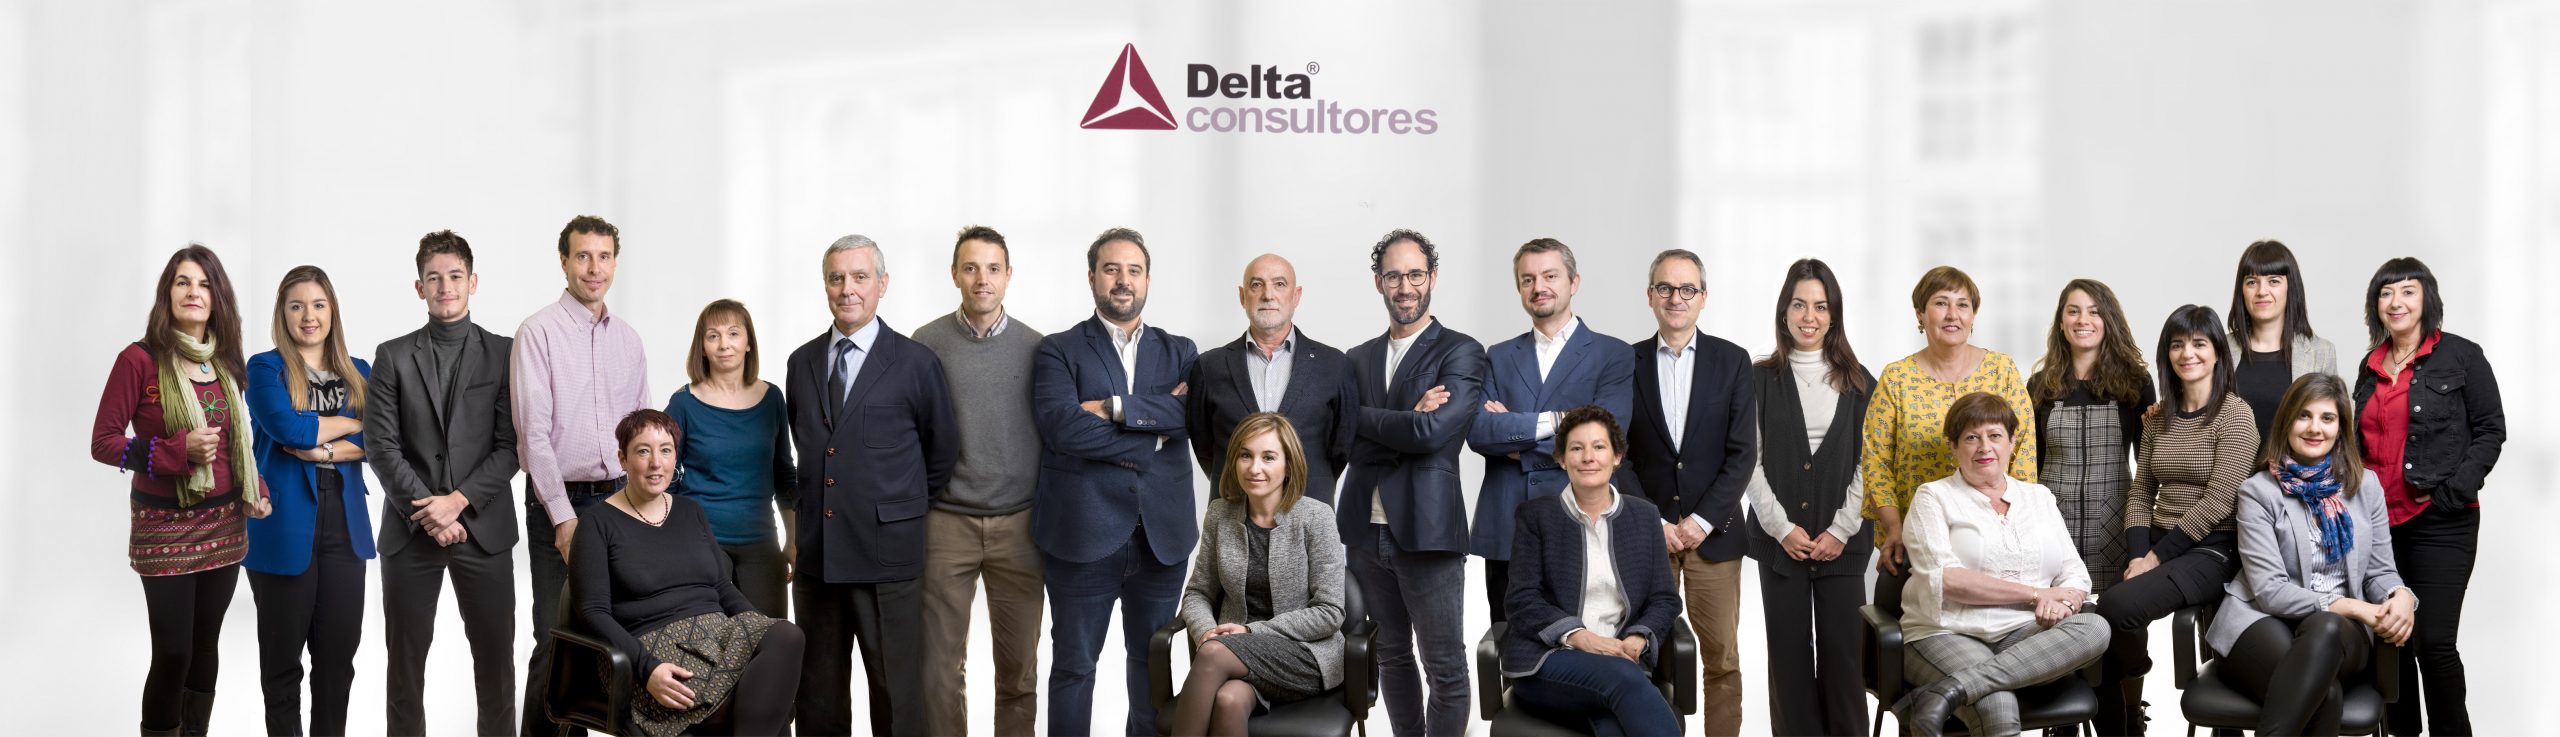 Equipo de Delta Consultores